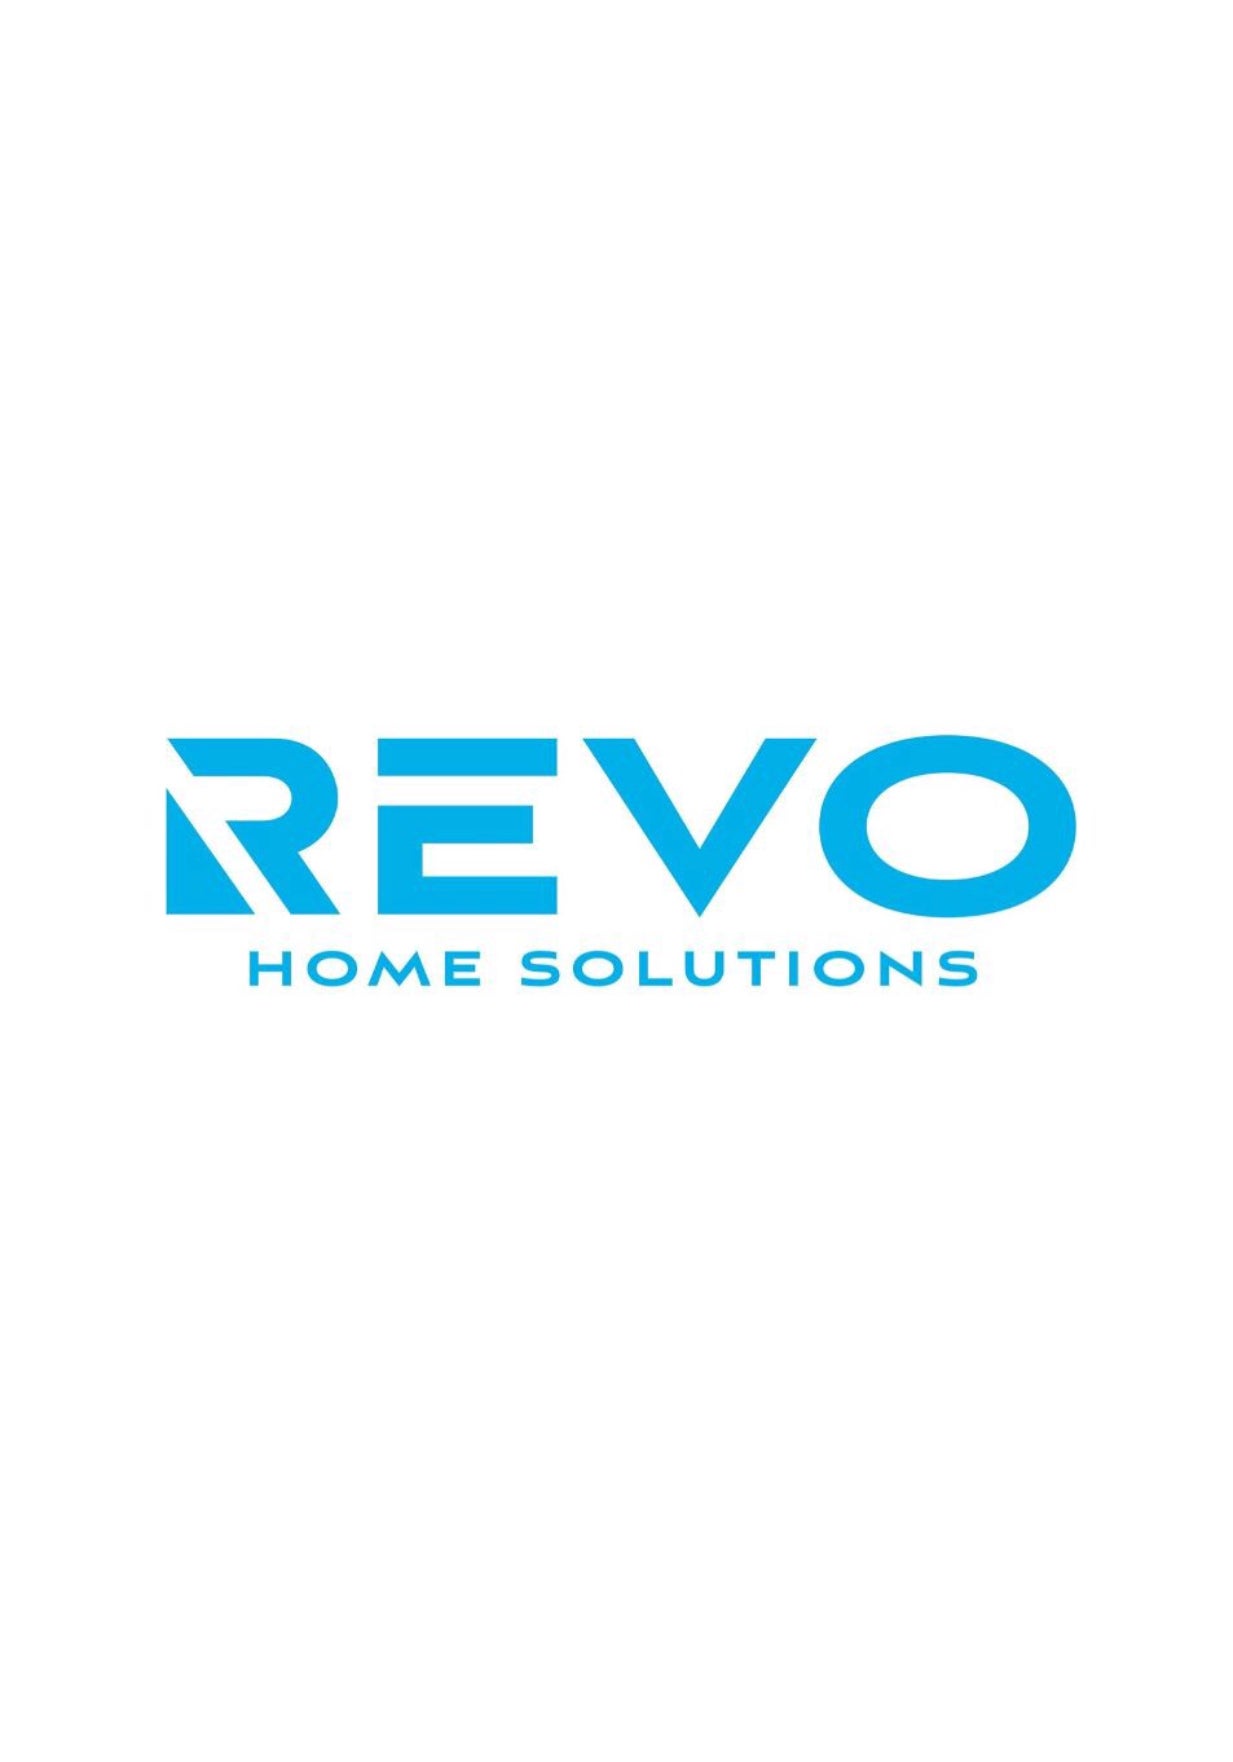 Revo Home Solutions logo